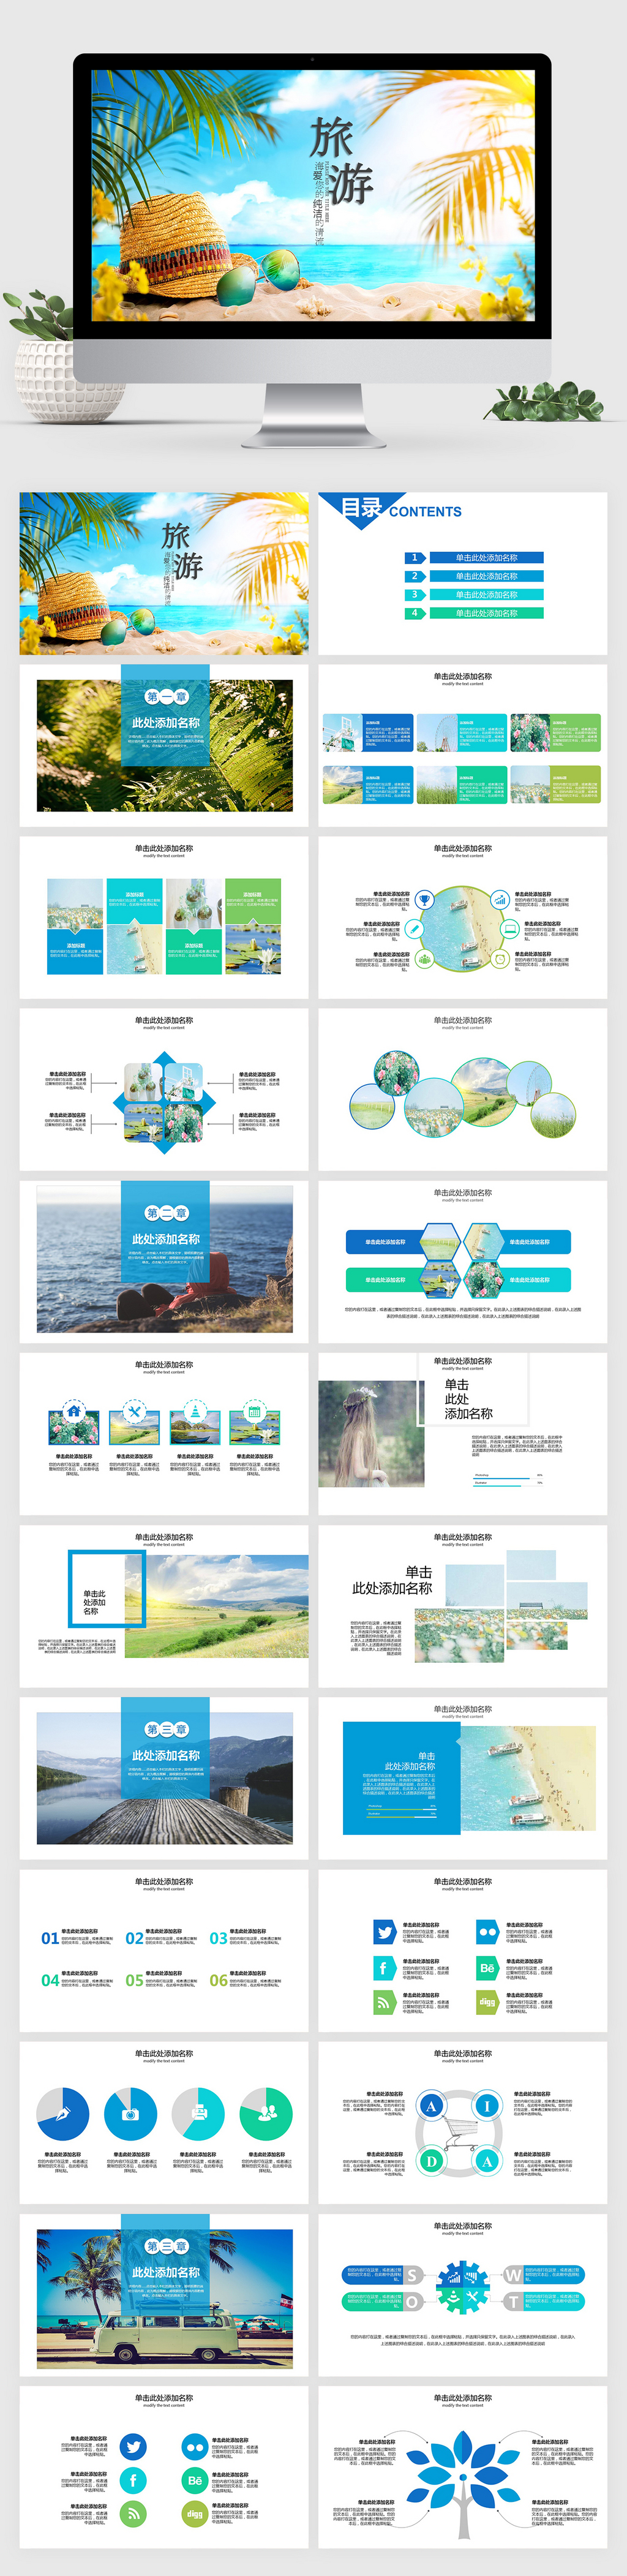 海岛五一旅游风旅游活动宣传相册照片图片展示ppt模板